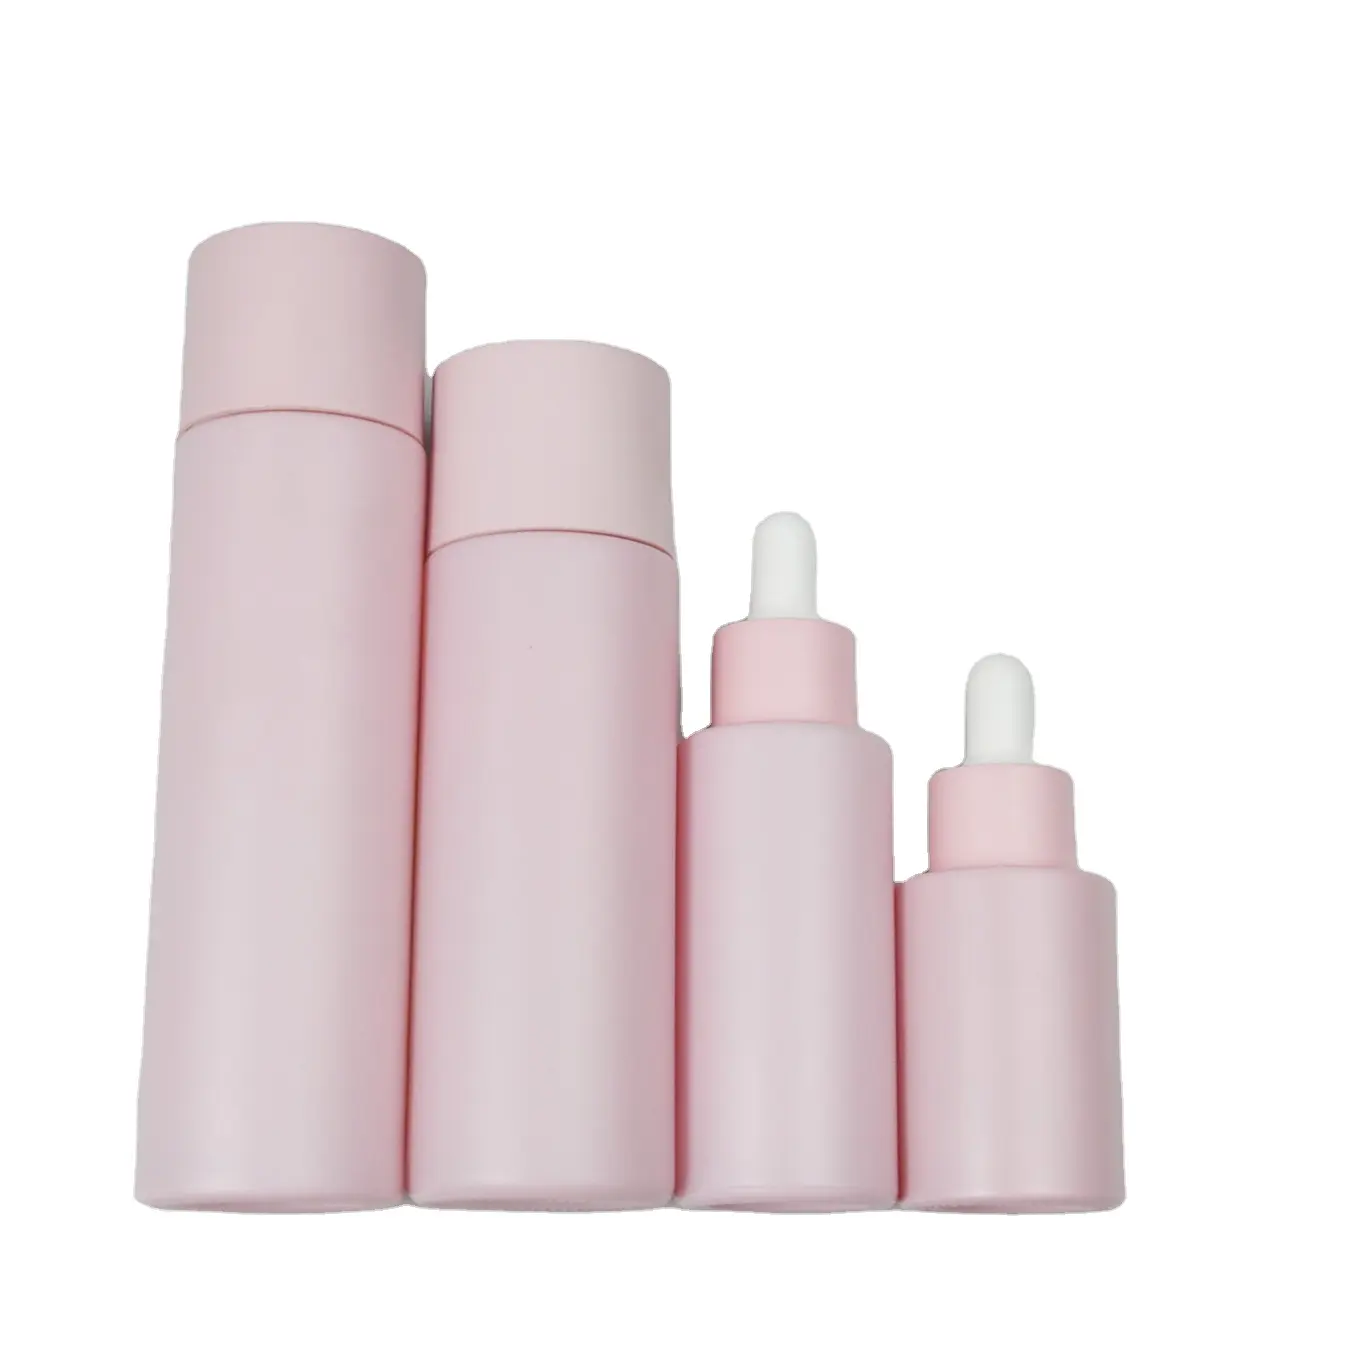 Toples botol krim Losion kaca kosmetik, Set botol krim Losion kaca kosmetik merah muda Matte 30ml 50ml 100ml 120ml untuk perawatan kulit